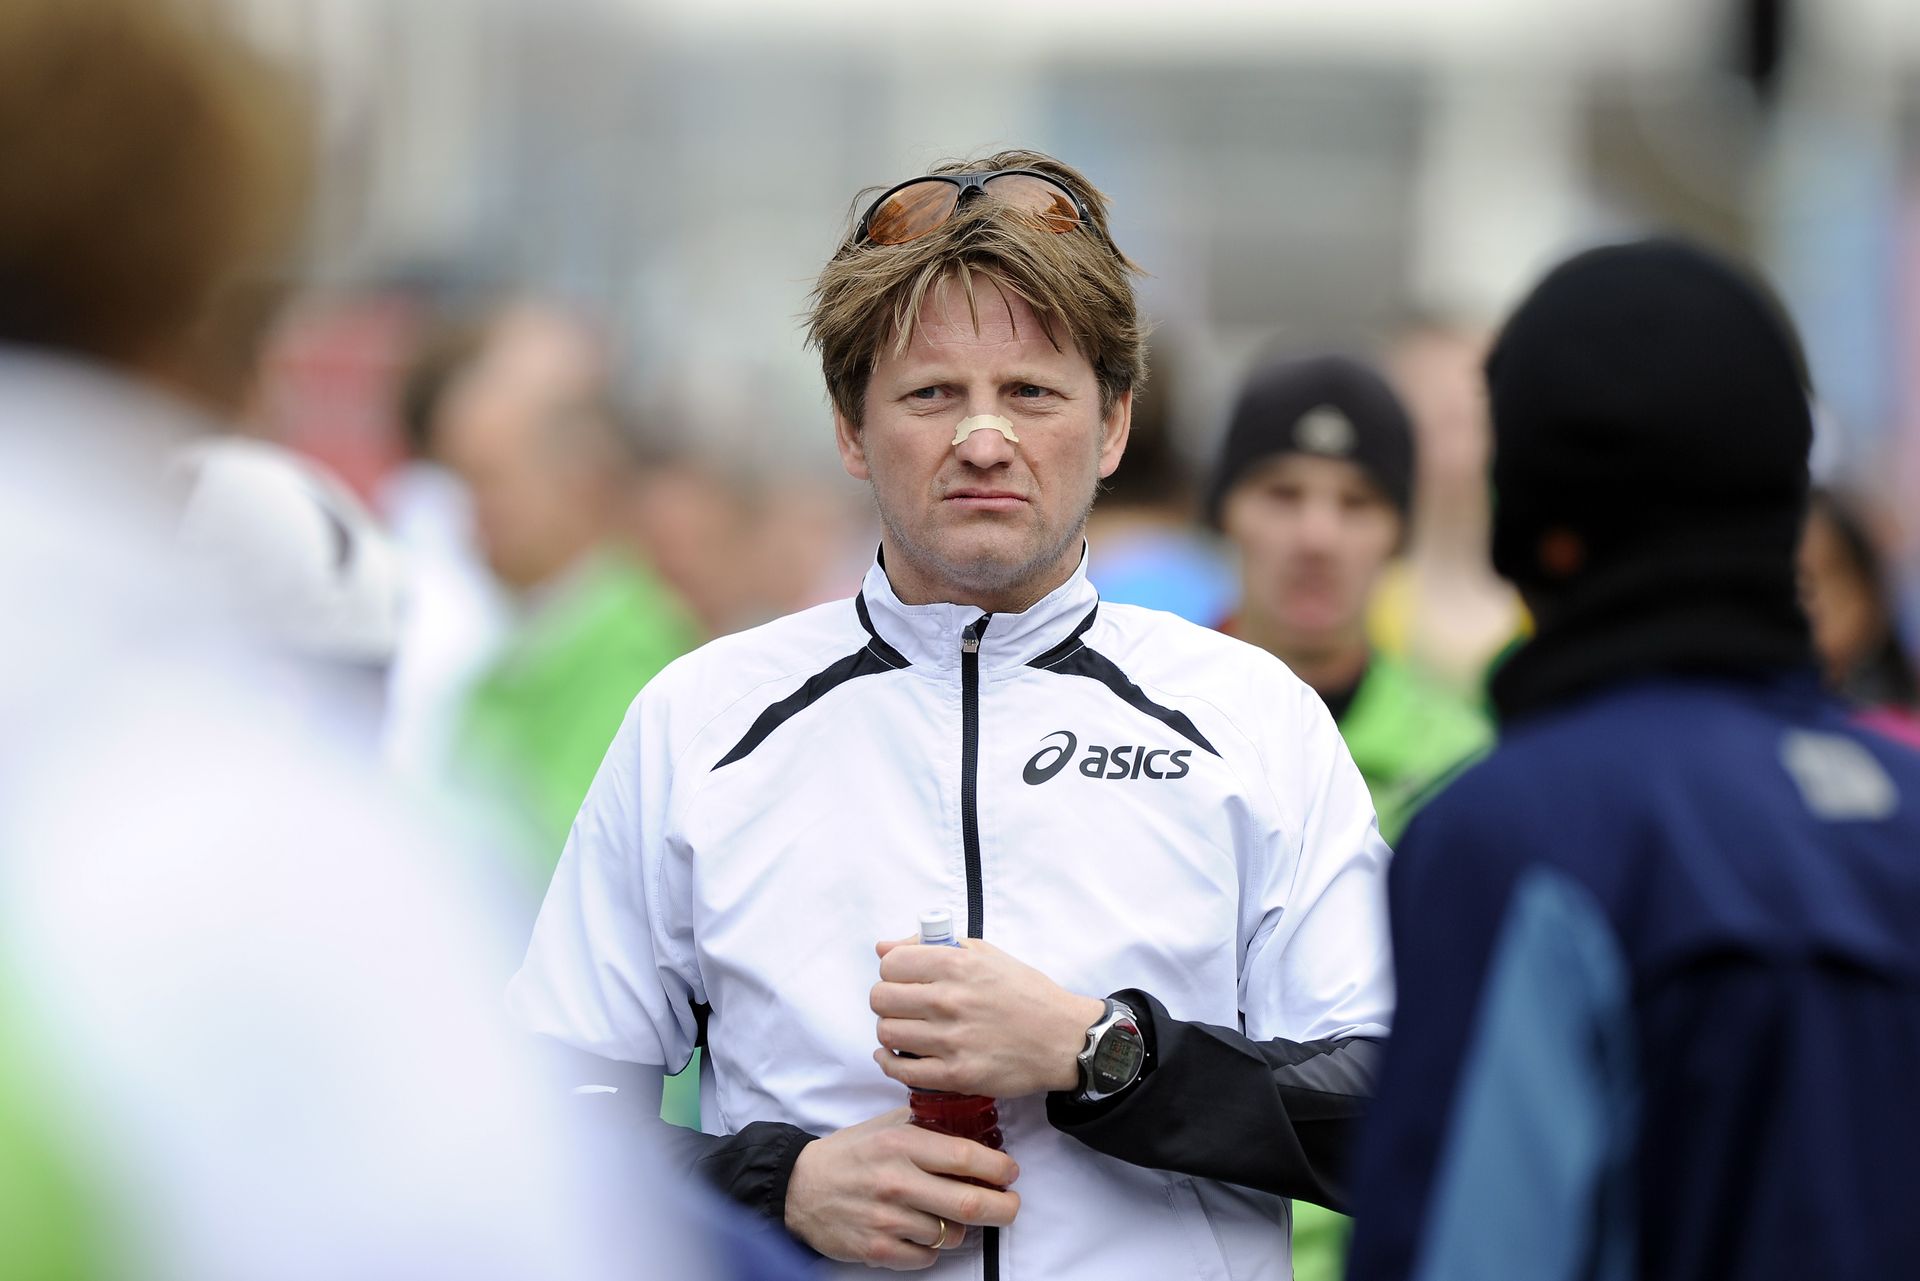 April 2012: Prins Pieter-Christiaan doet mee aan de Marathon van Rotterdam